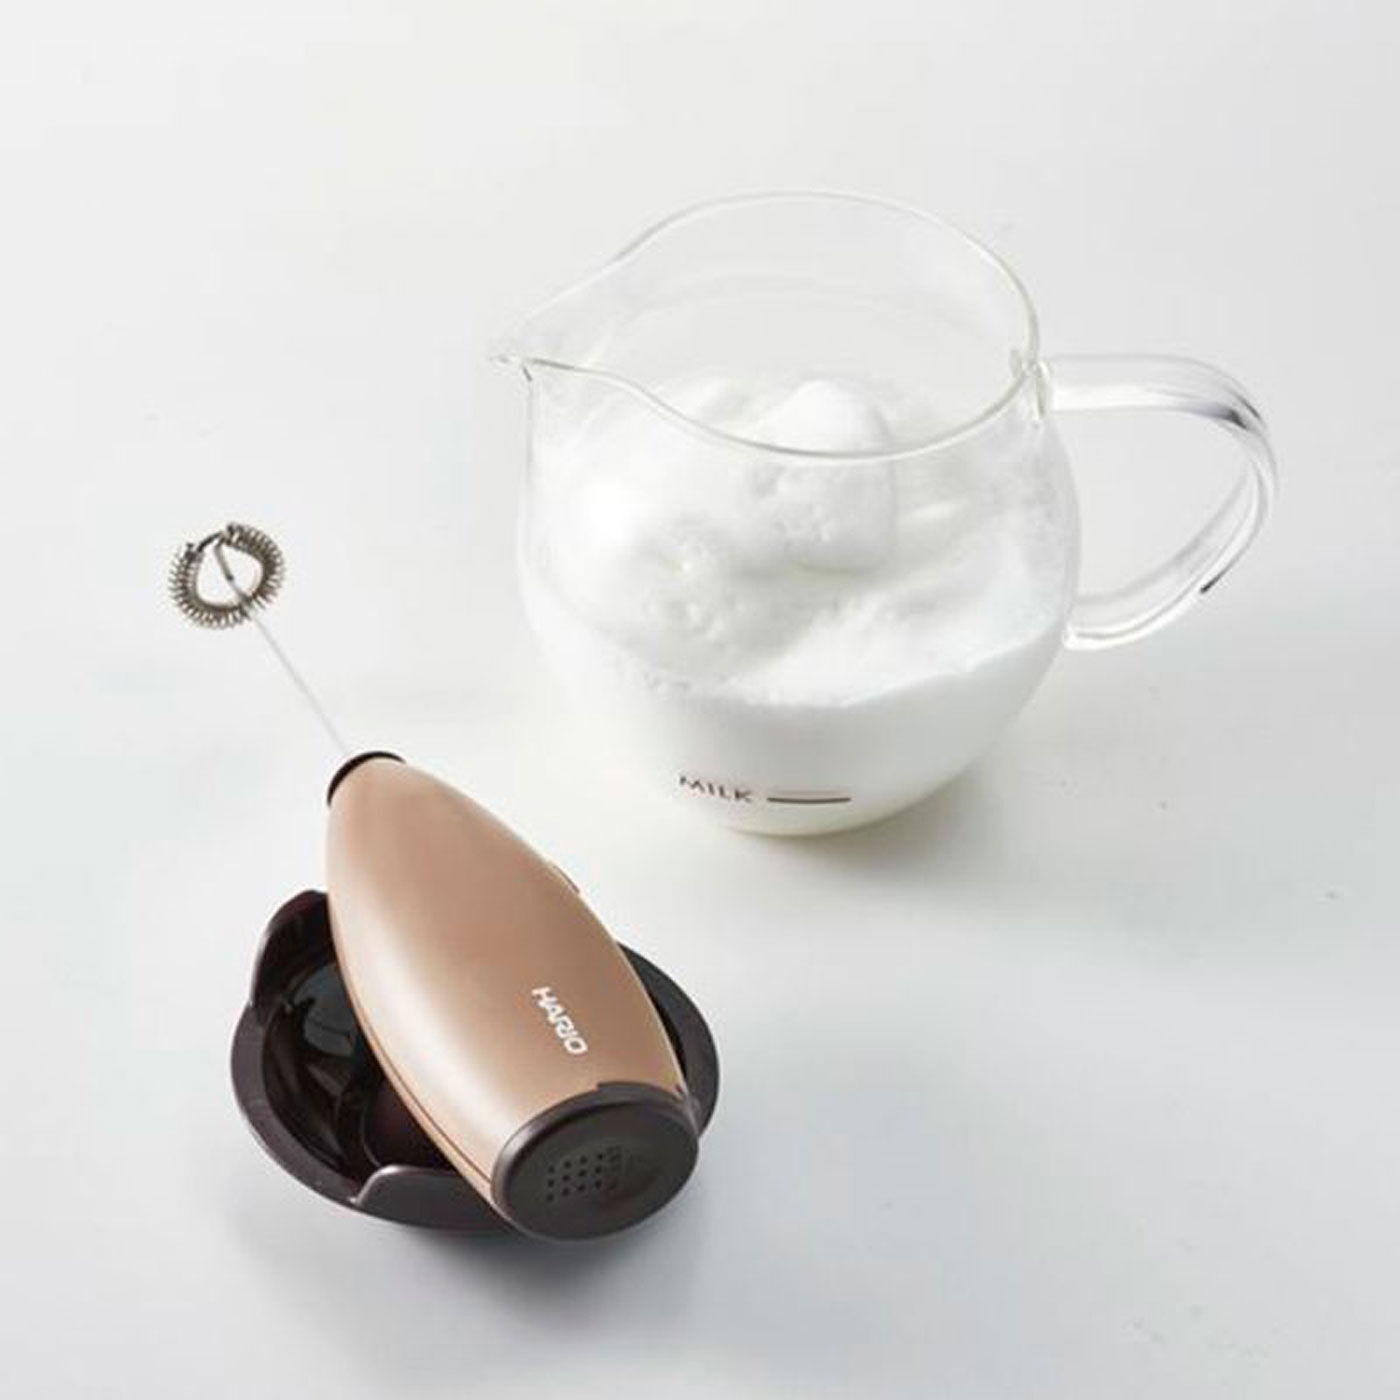 フェリシモの雑貨 Kraso|ふわふわミルクフォームが簡単に 耐熱ガラスボウル付きミルククリーマー|きめ細かく滑らかなミルクフォームの完成